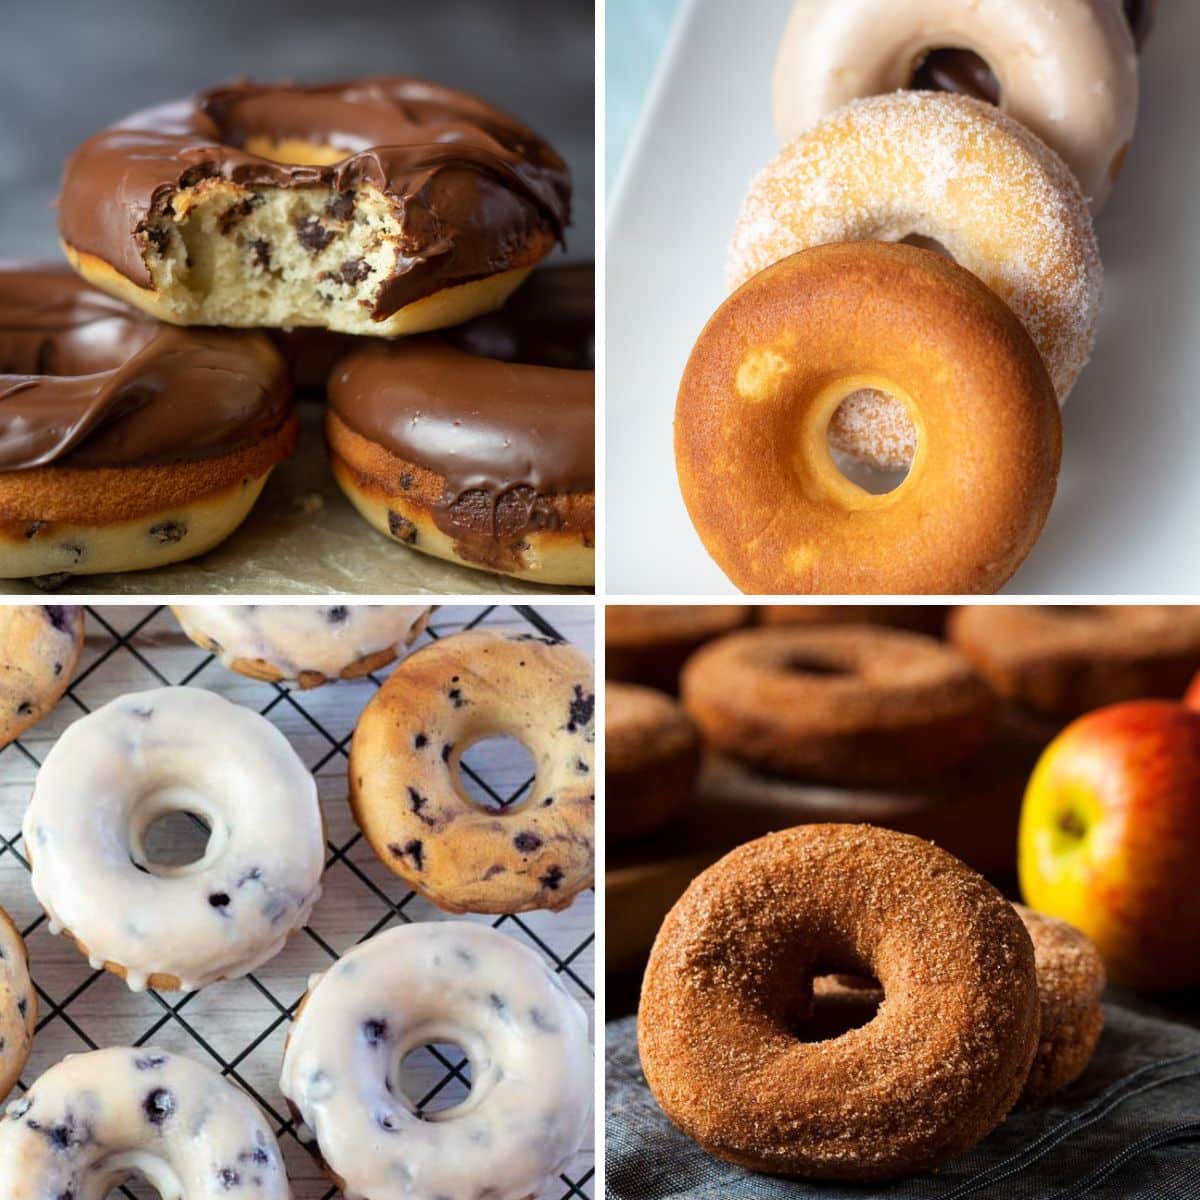 Die besten gebackenen Donut-Rezepte für das Frühstück und Snacks für unterwegs, wie diese 4 leckeren Geschmacksrichtungen.